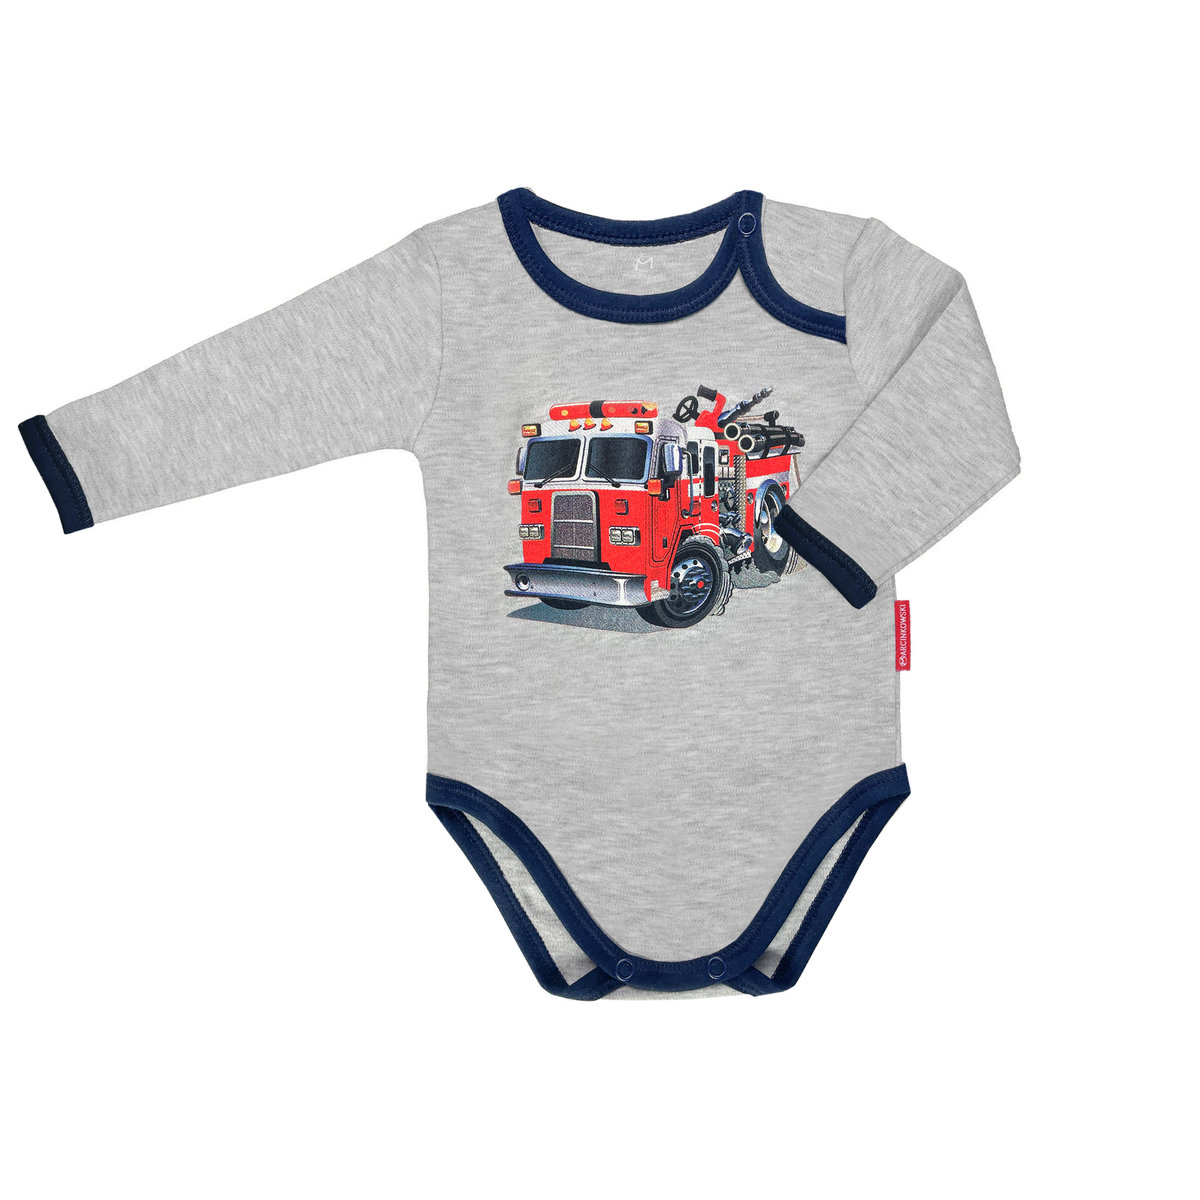 Body dziecięce dla niemowląt bawełniane długi rękaw szare straż pożarna 86